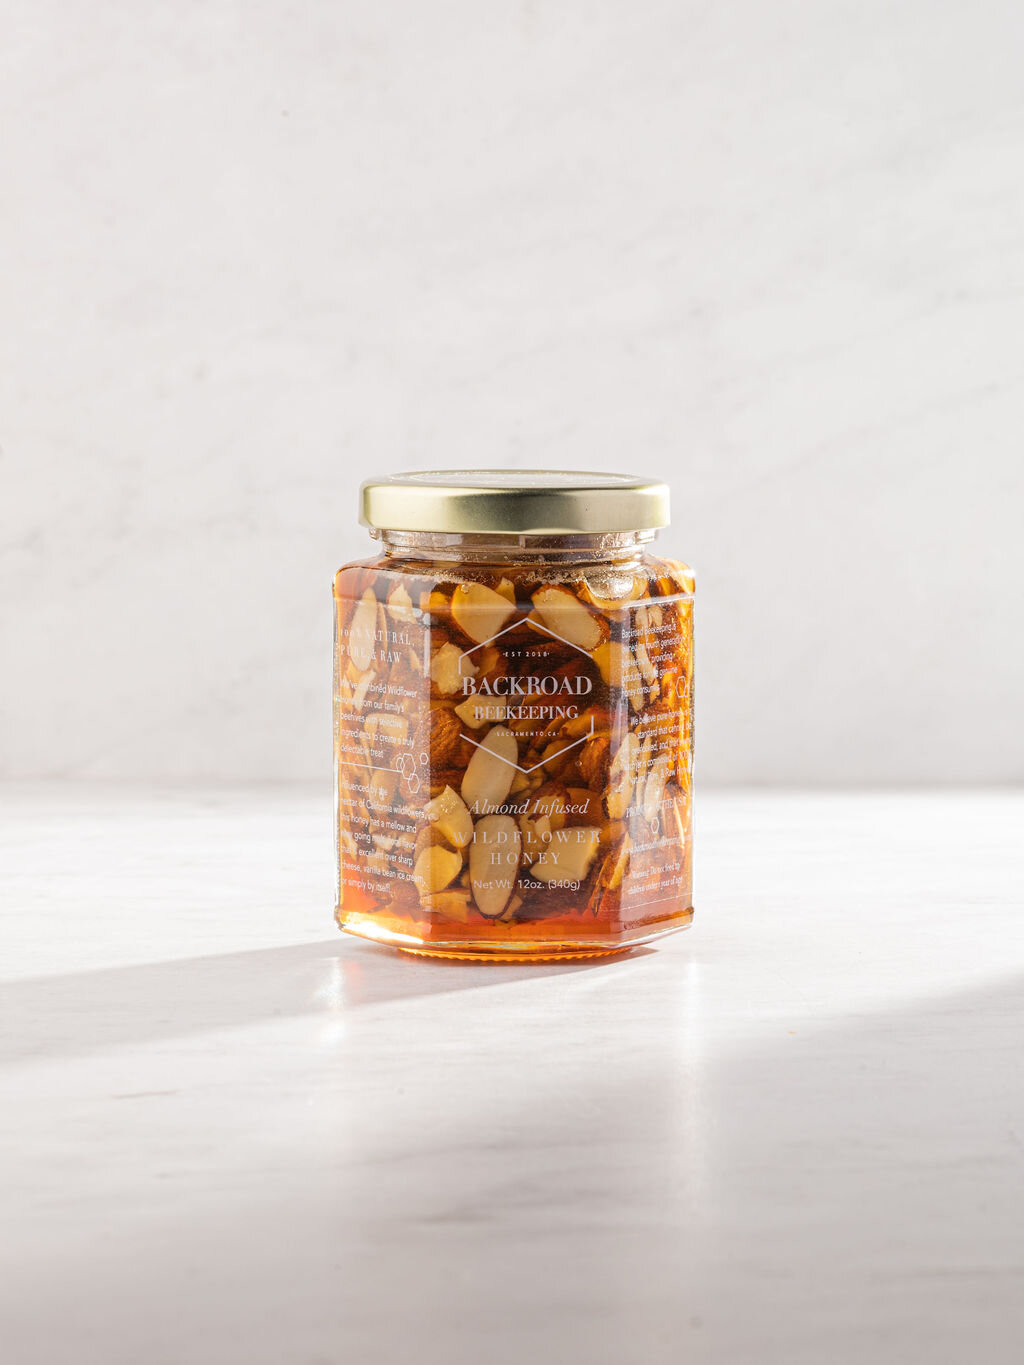 BACKROAD BEEKEEPING-Shop Raw Honey | Almond Infused Wildflower Honey